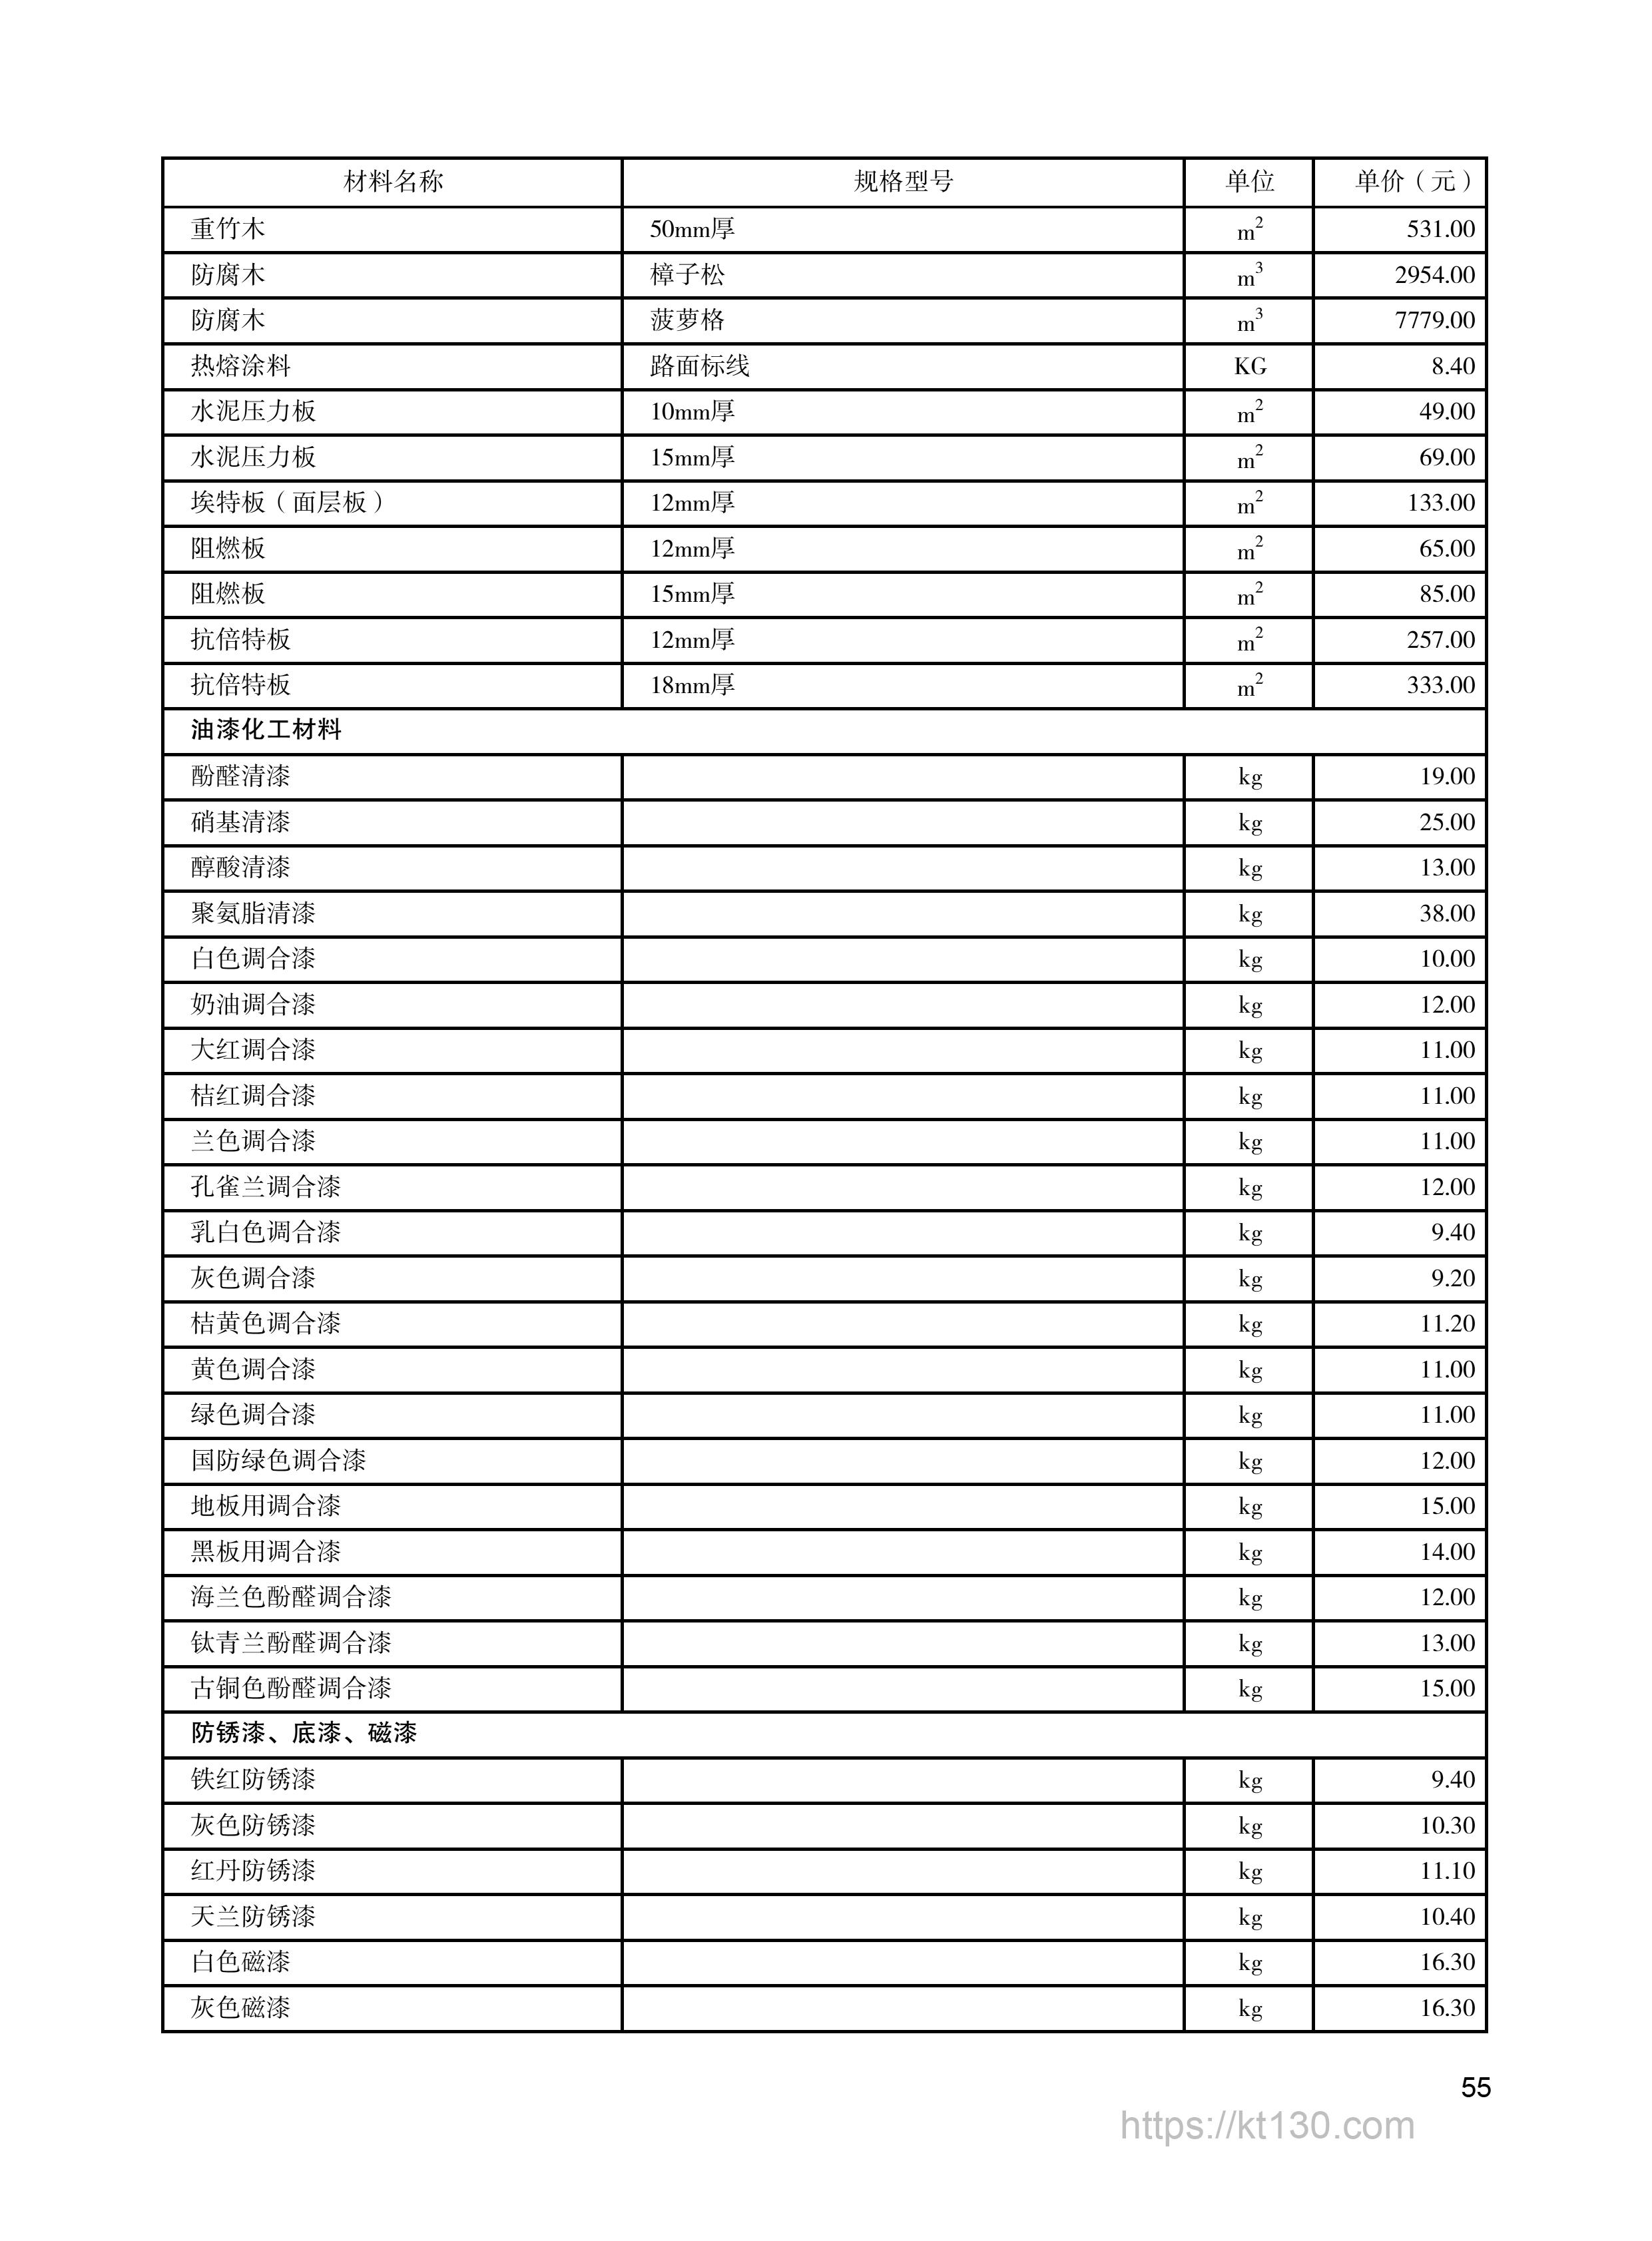 陕西省2022年9月份油漆化工材料价格表